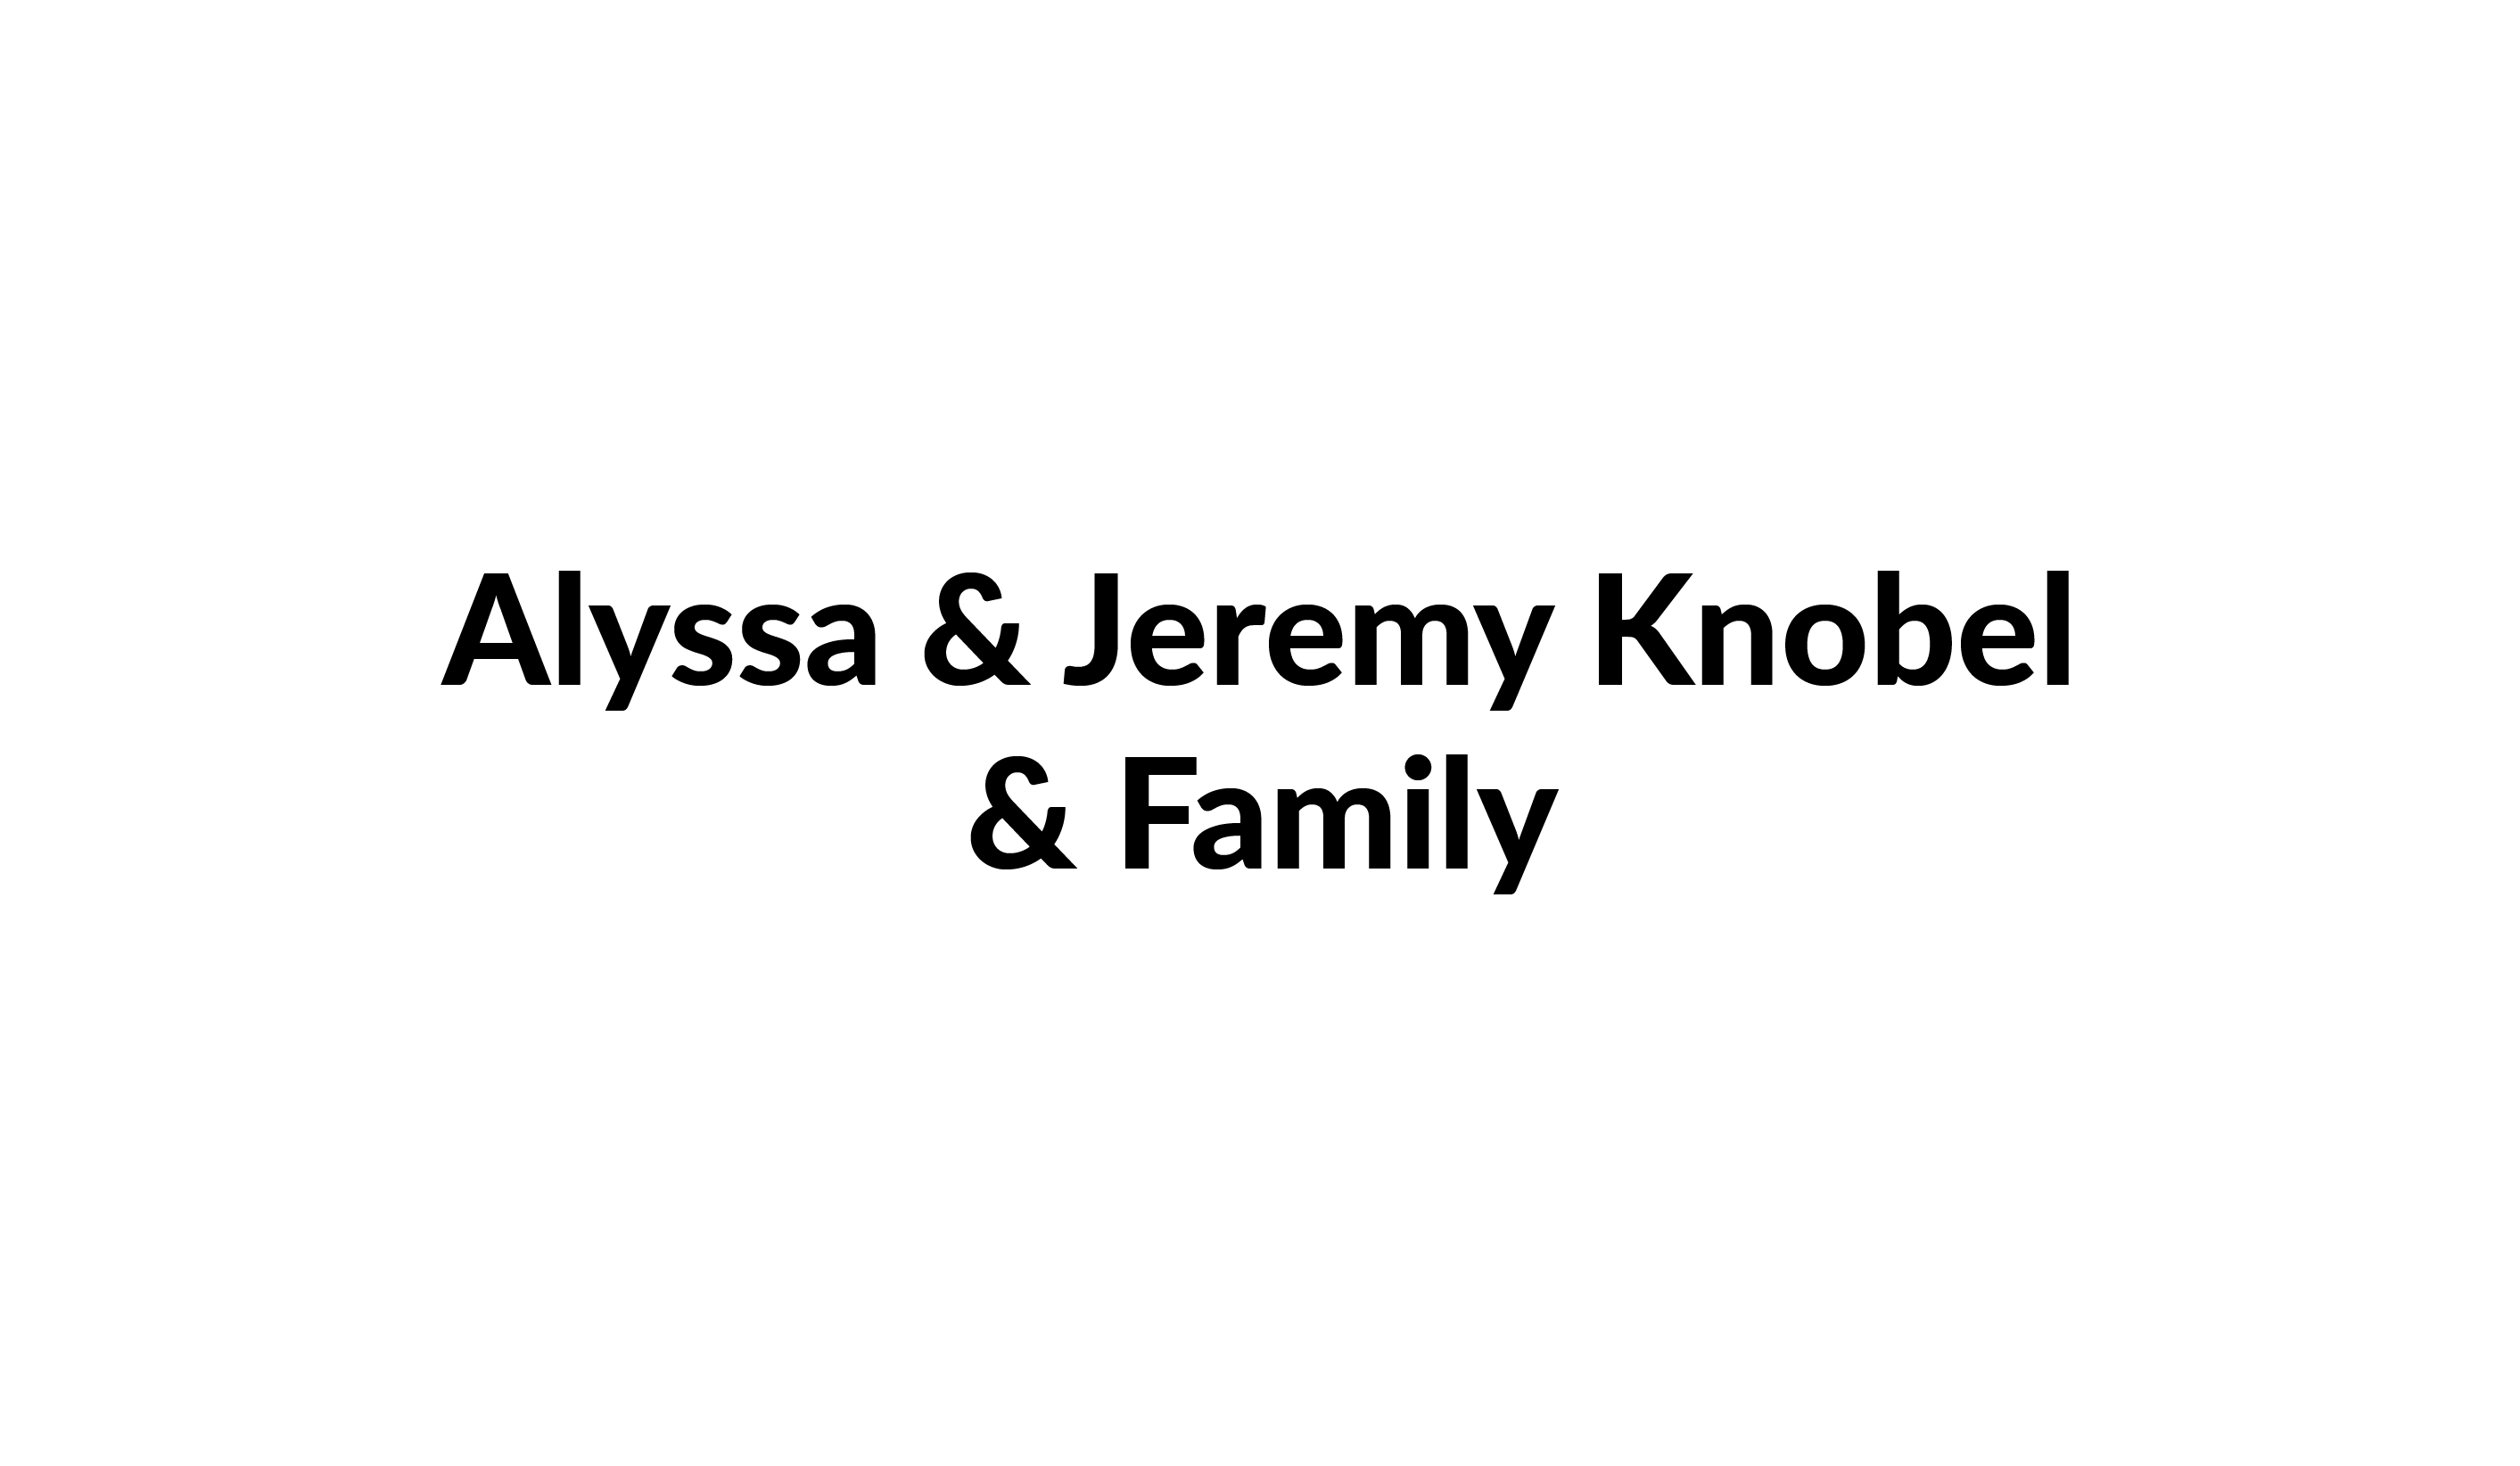 Alyssa & Jeremy Knobel & Family